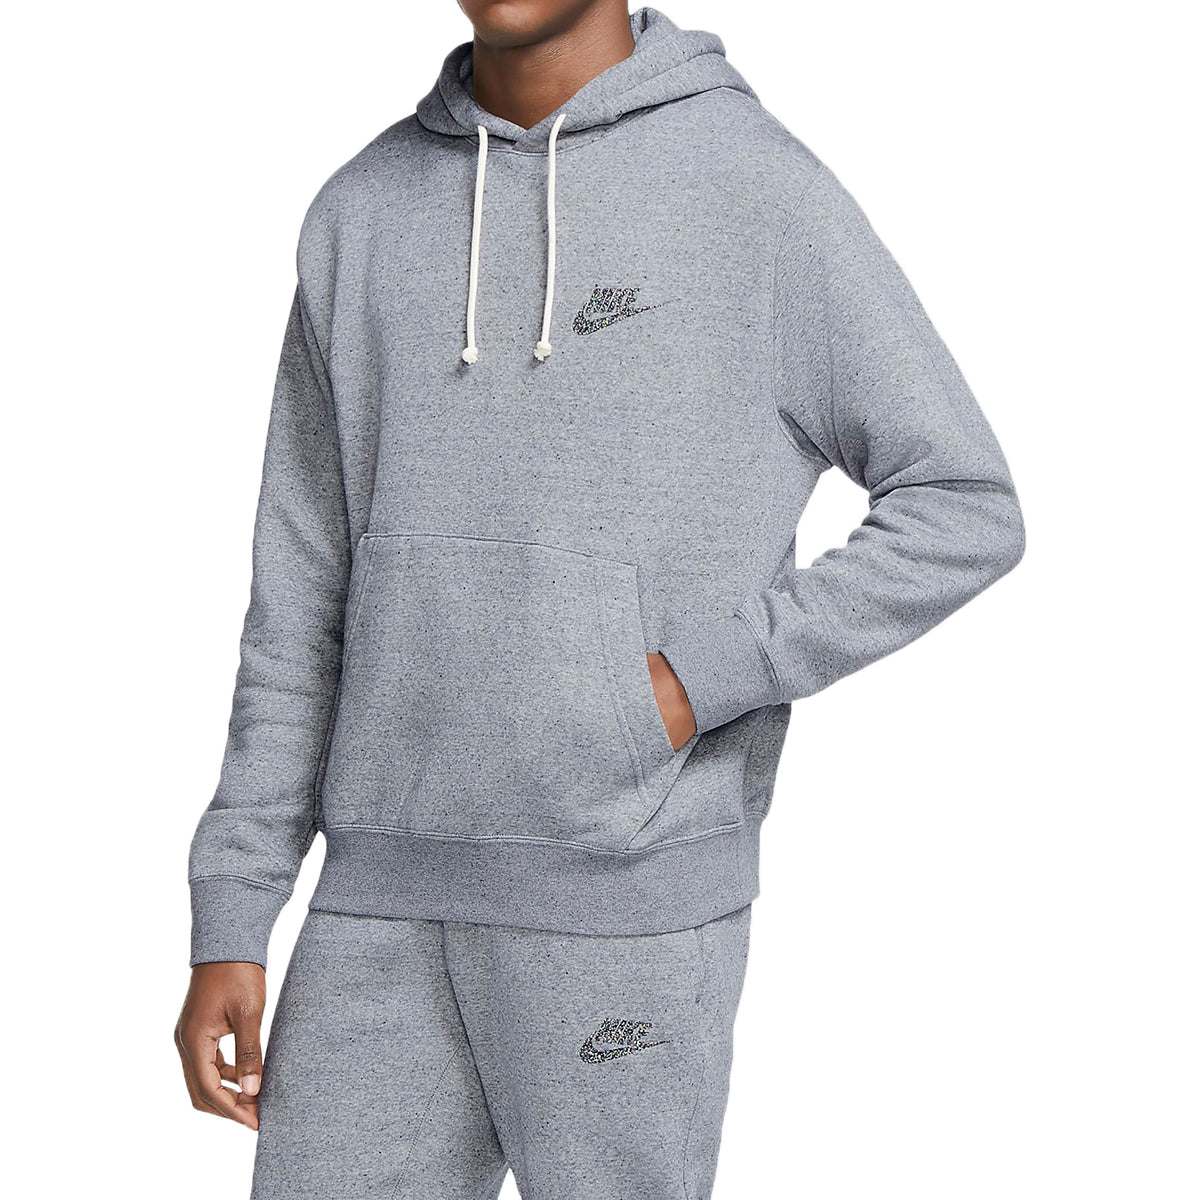 Nike Sportswear Hoodie Mens Style : Cu4383